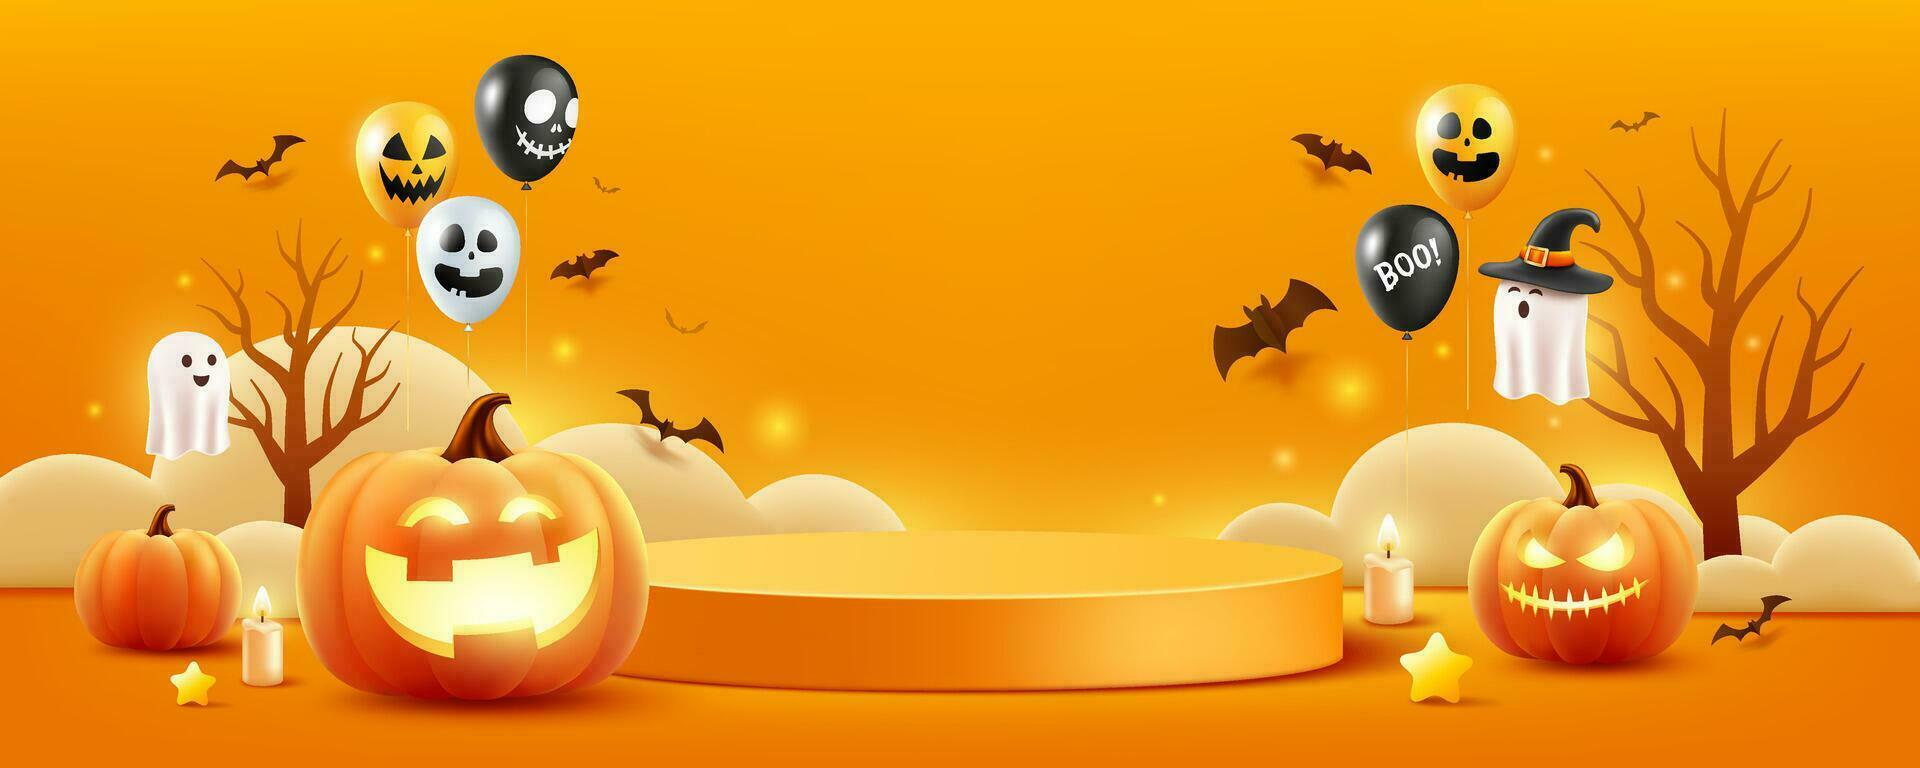 Víspera de Todos los Santos naranja podio, calabazas, fantasmas, vela, y murciélago volador, globos, arboles bandera diseño en naranja fondo, eps 10 vector ilustración